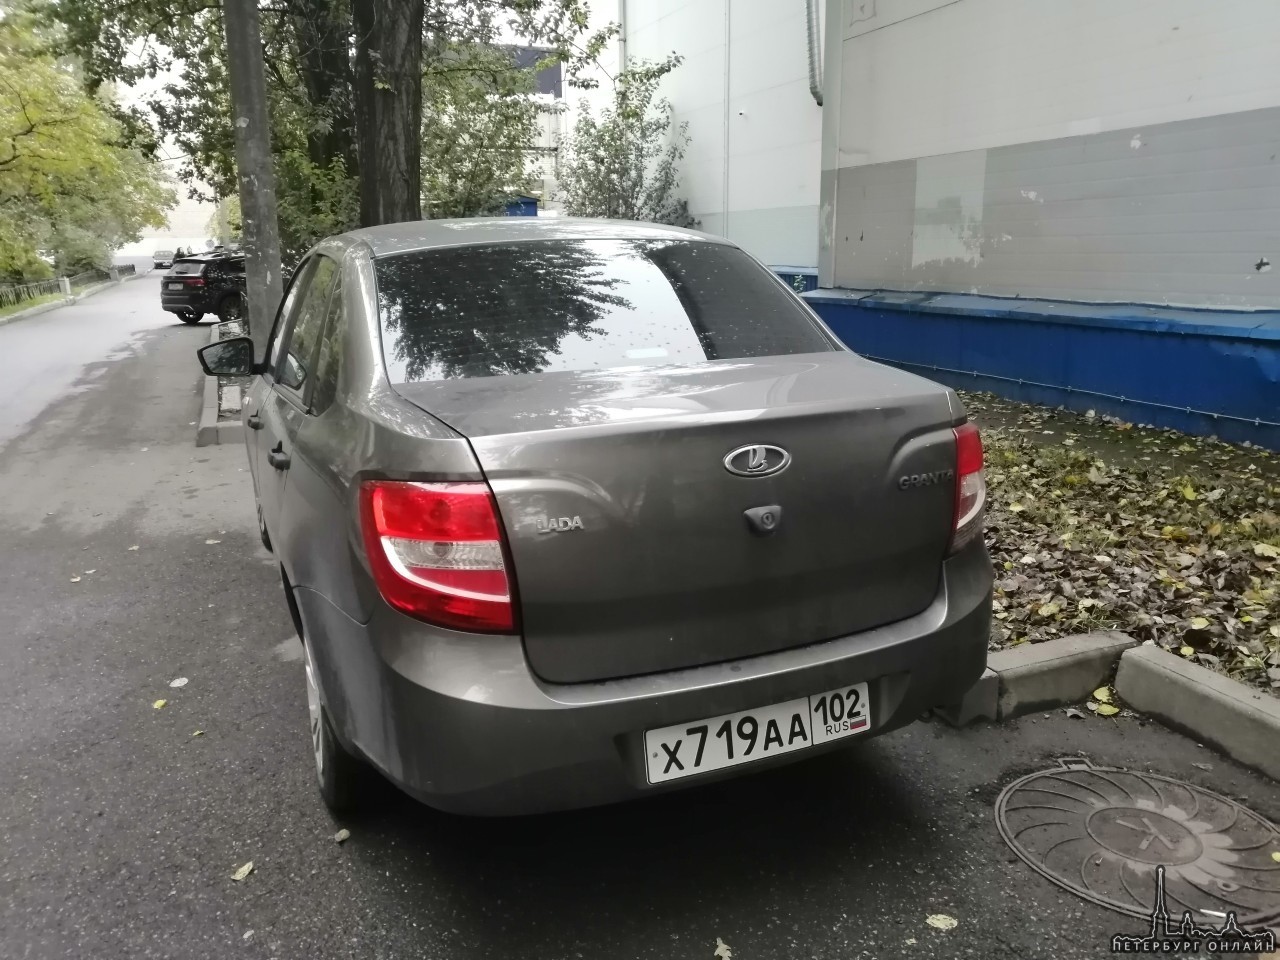 В ночь с 30 на 31 октября с улицы Димитрова 18 к1 был угнан автомобиль Lada Granta 219010 , золотист...